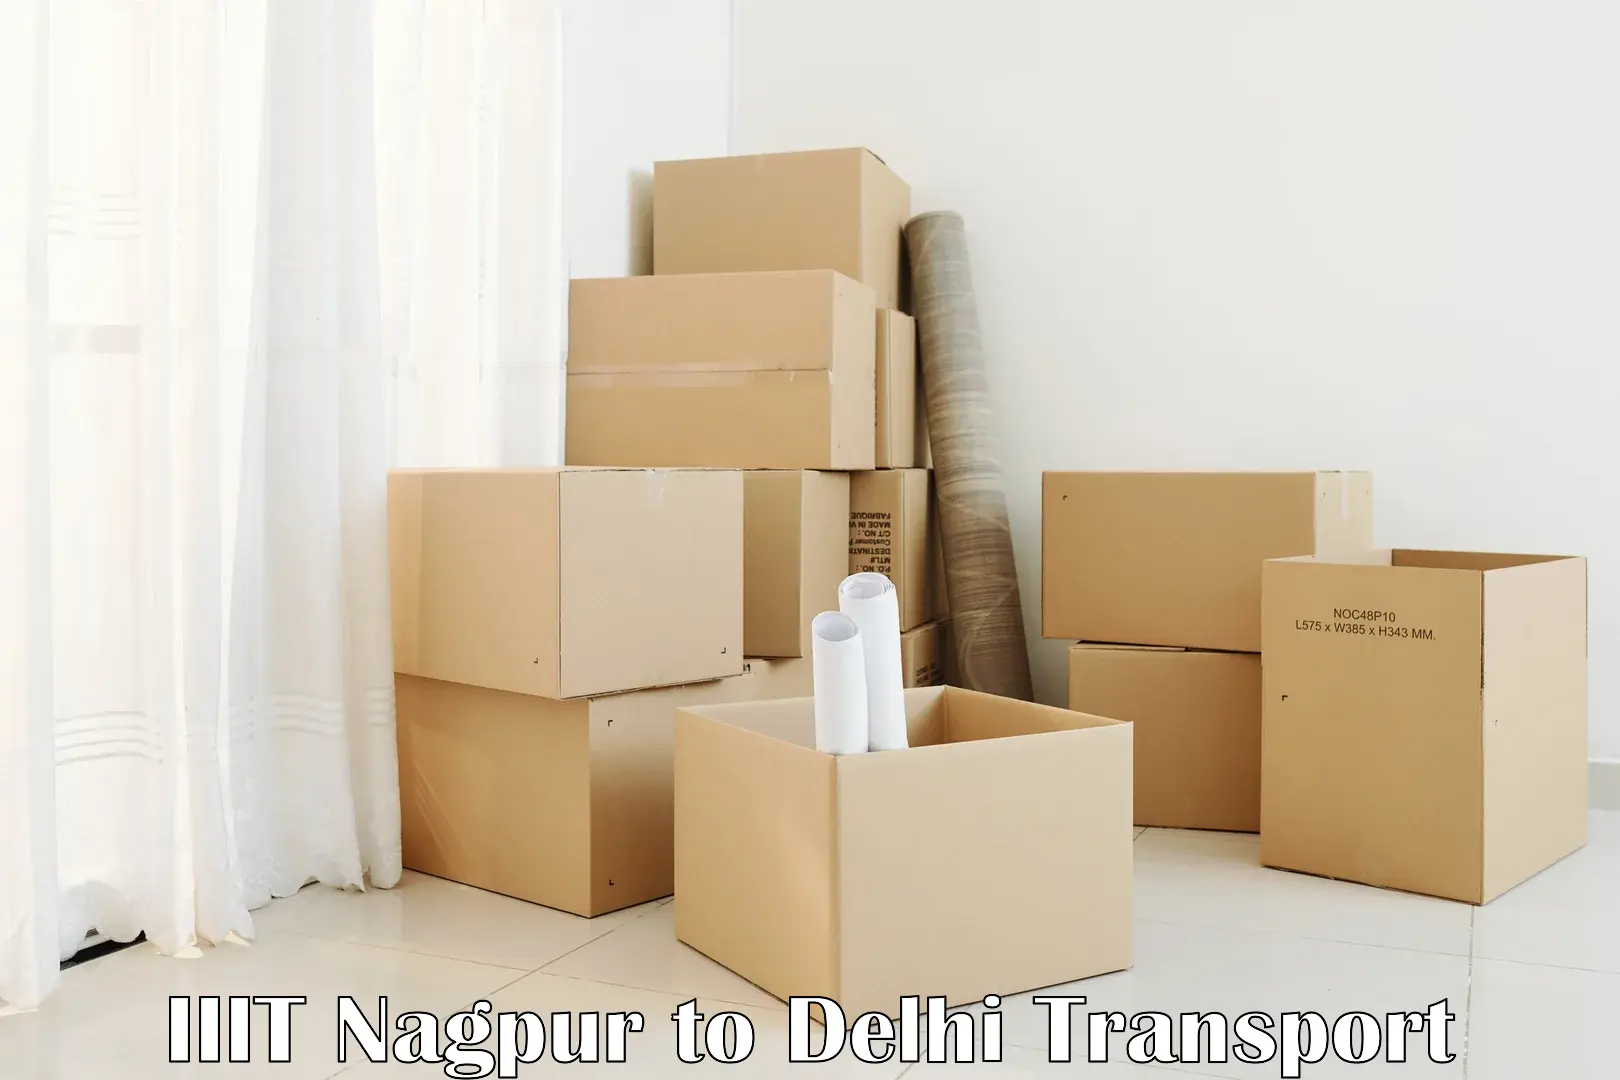 Online transport booking IIIT Nagpur to University of Delhi